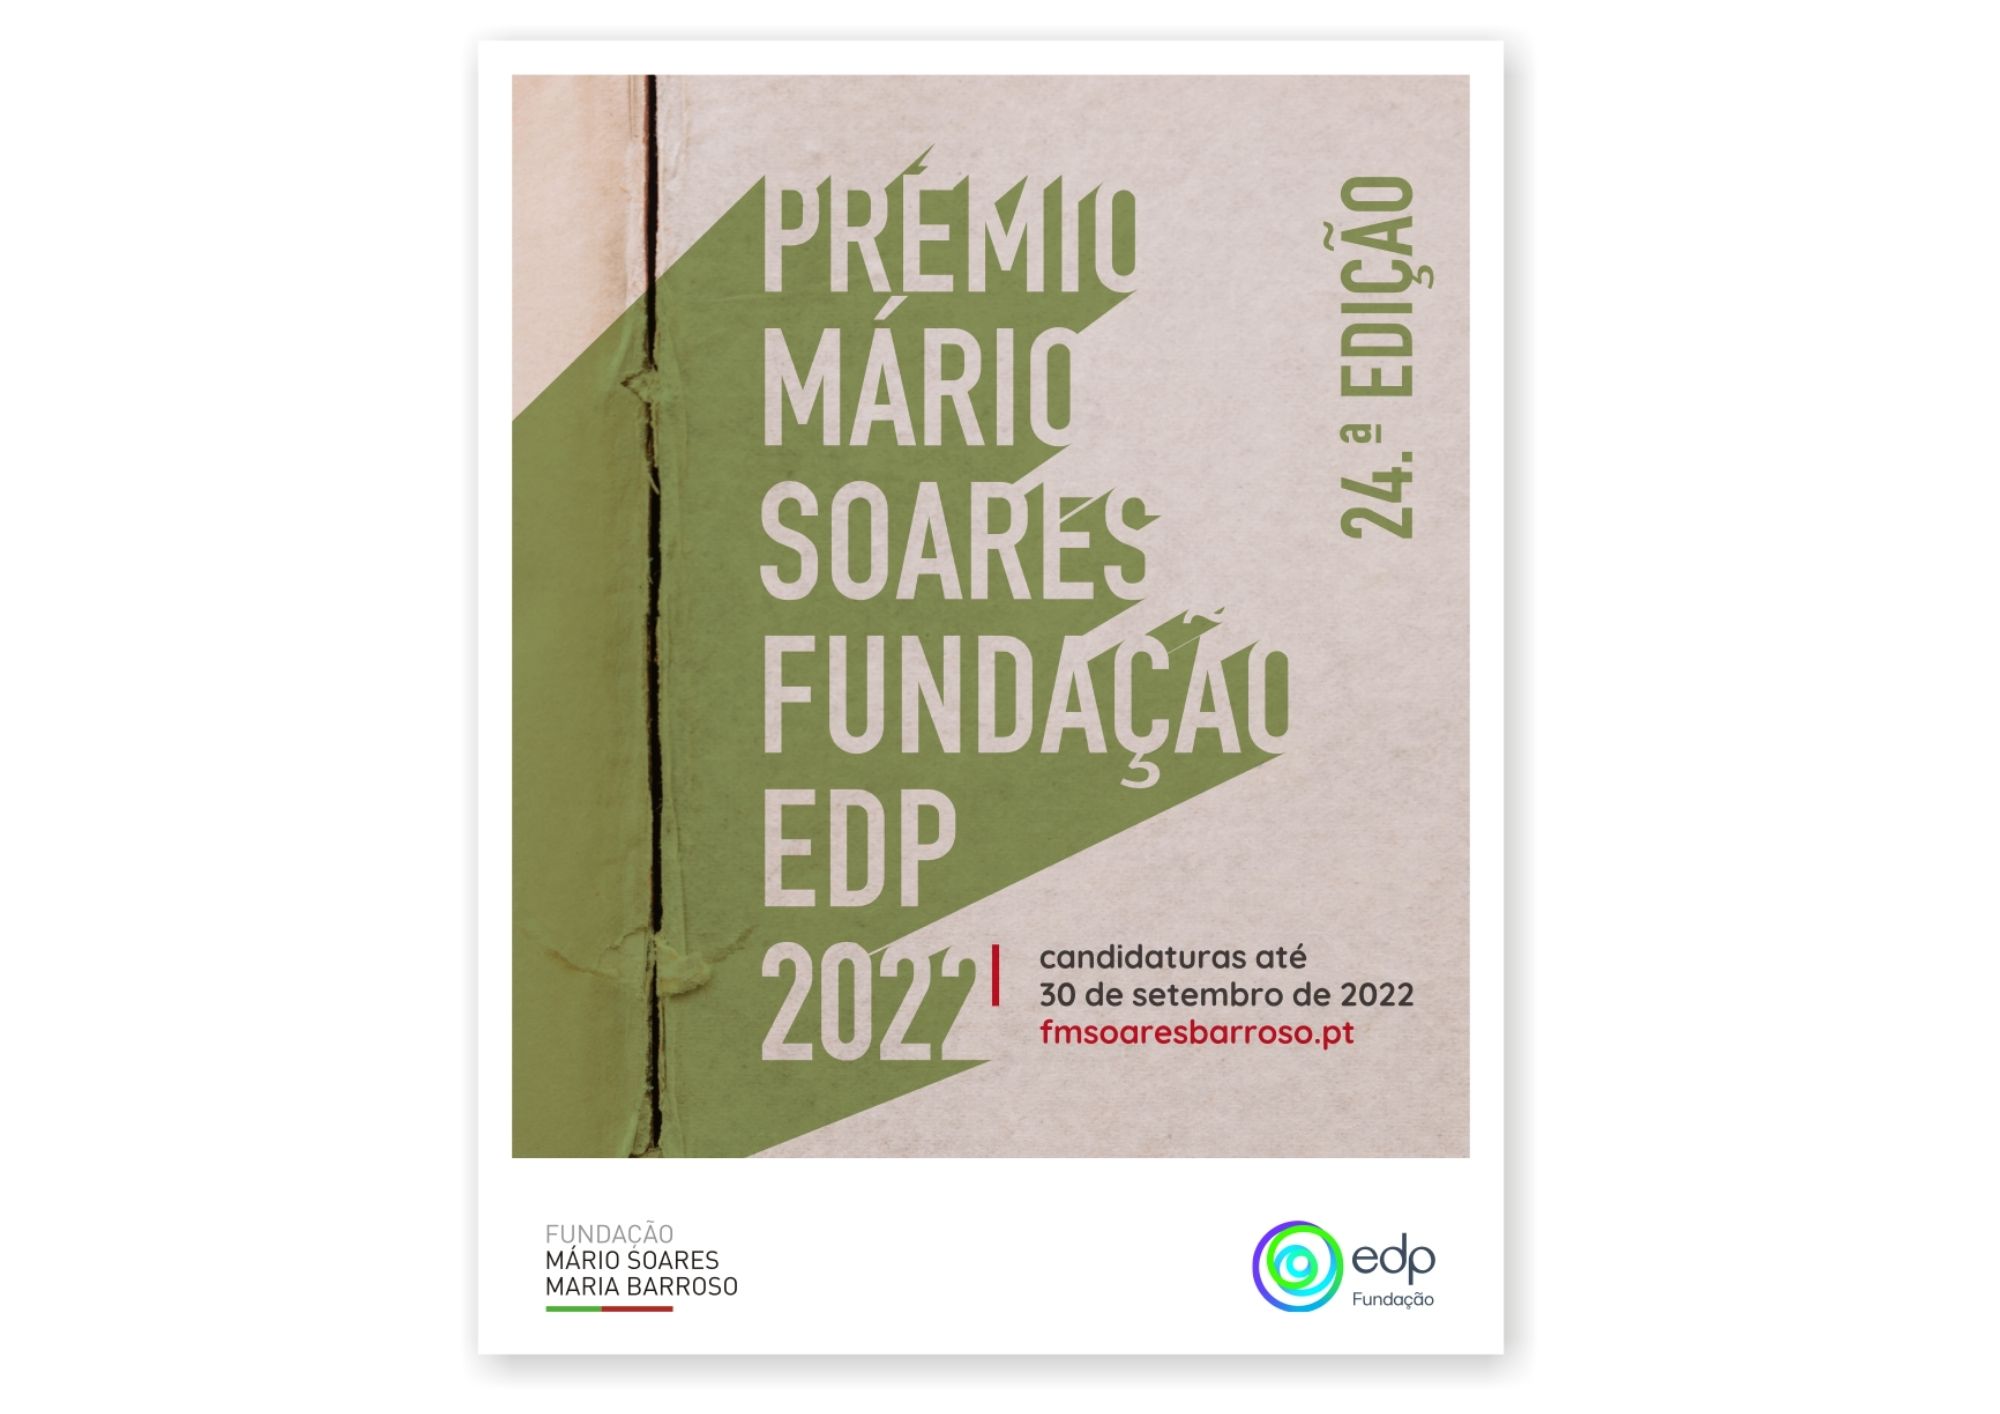 Prémio Mário Soares-Fundação EDP 2022, candidaturas até 30 de setembro